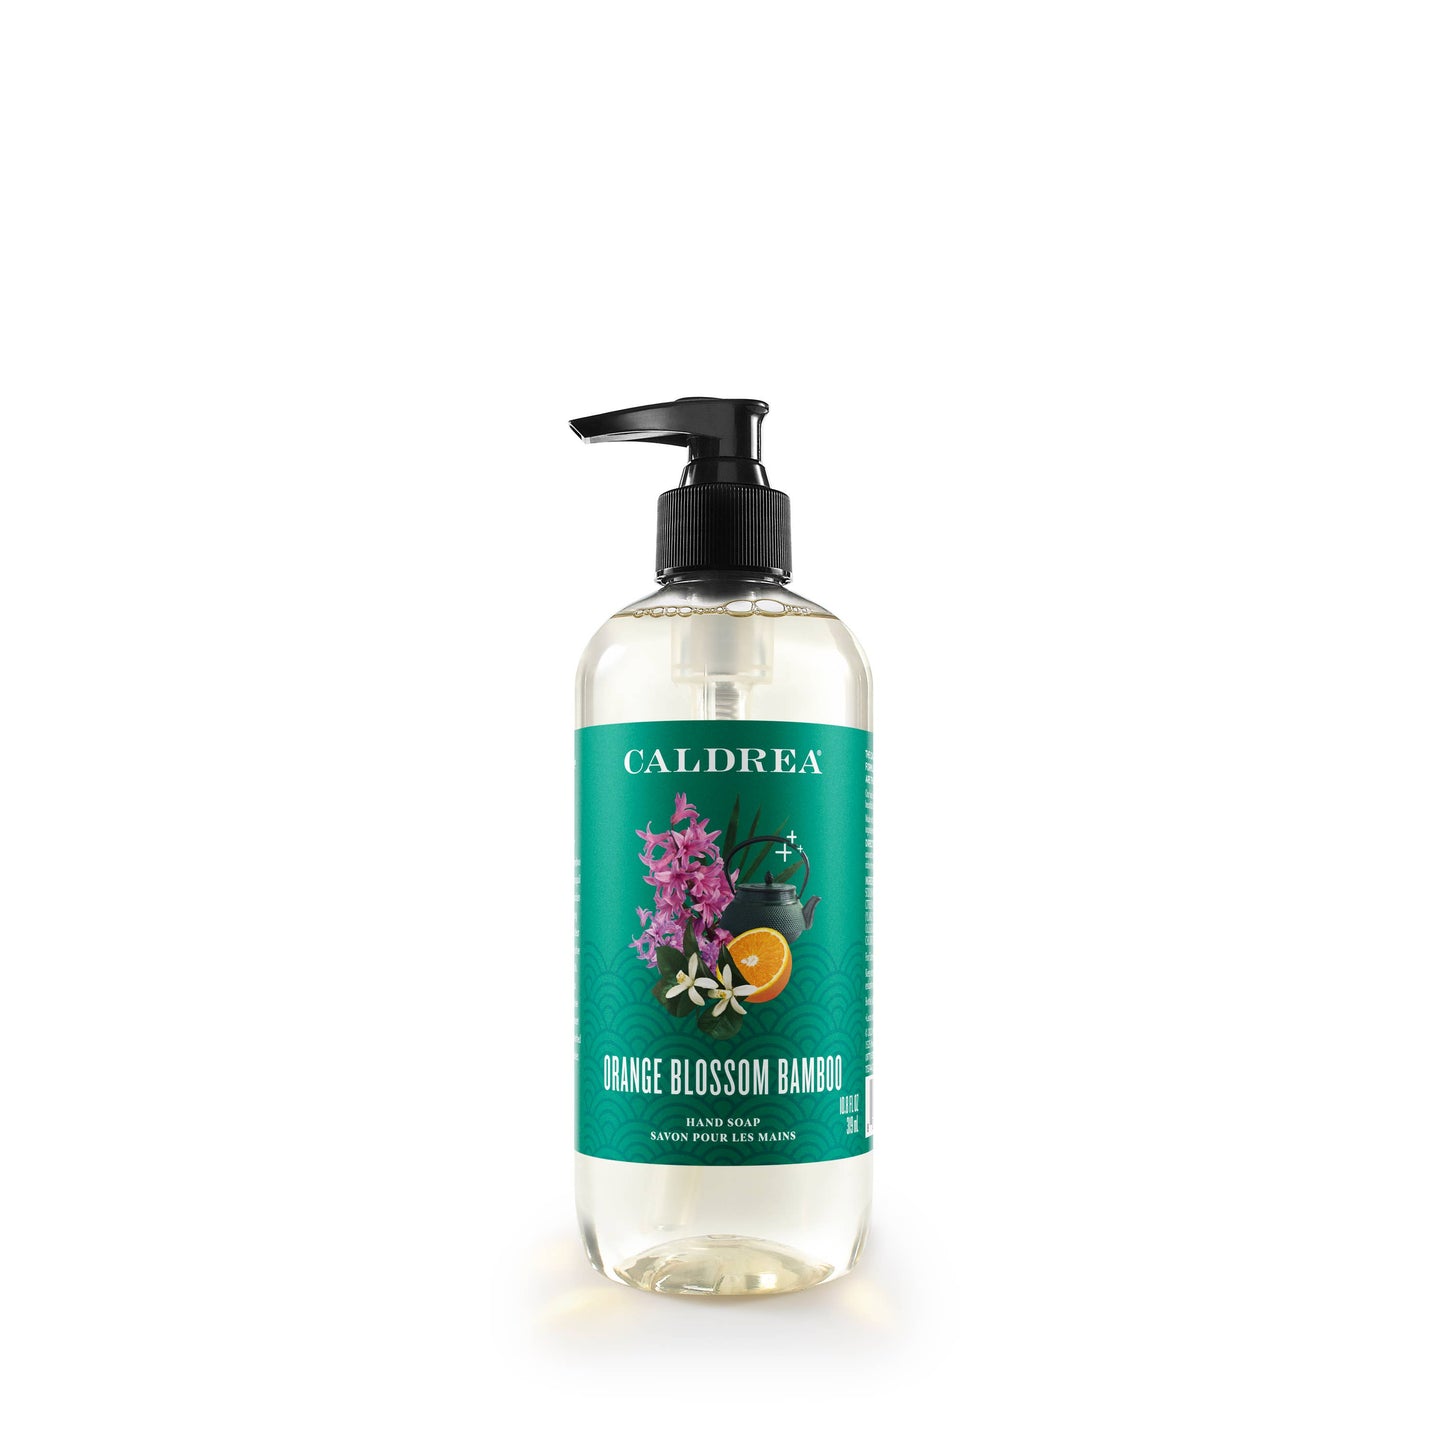 Caldrea - Orange Blossom Bamboo Hand Soap with Aloe Vera & Olive Oil